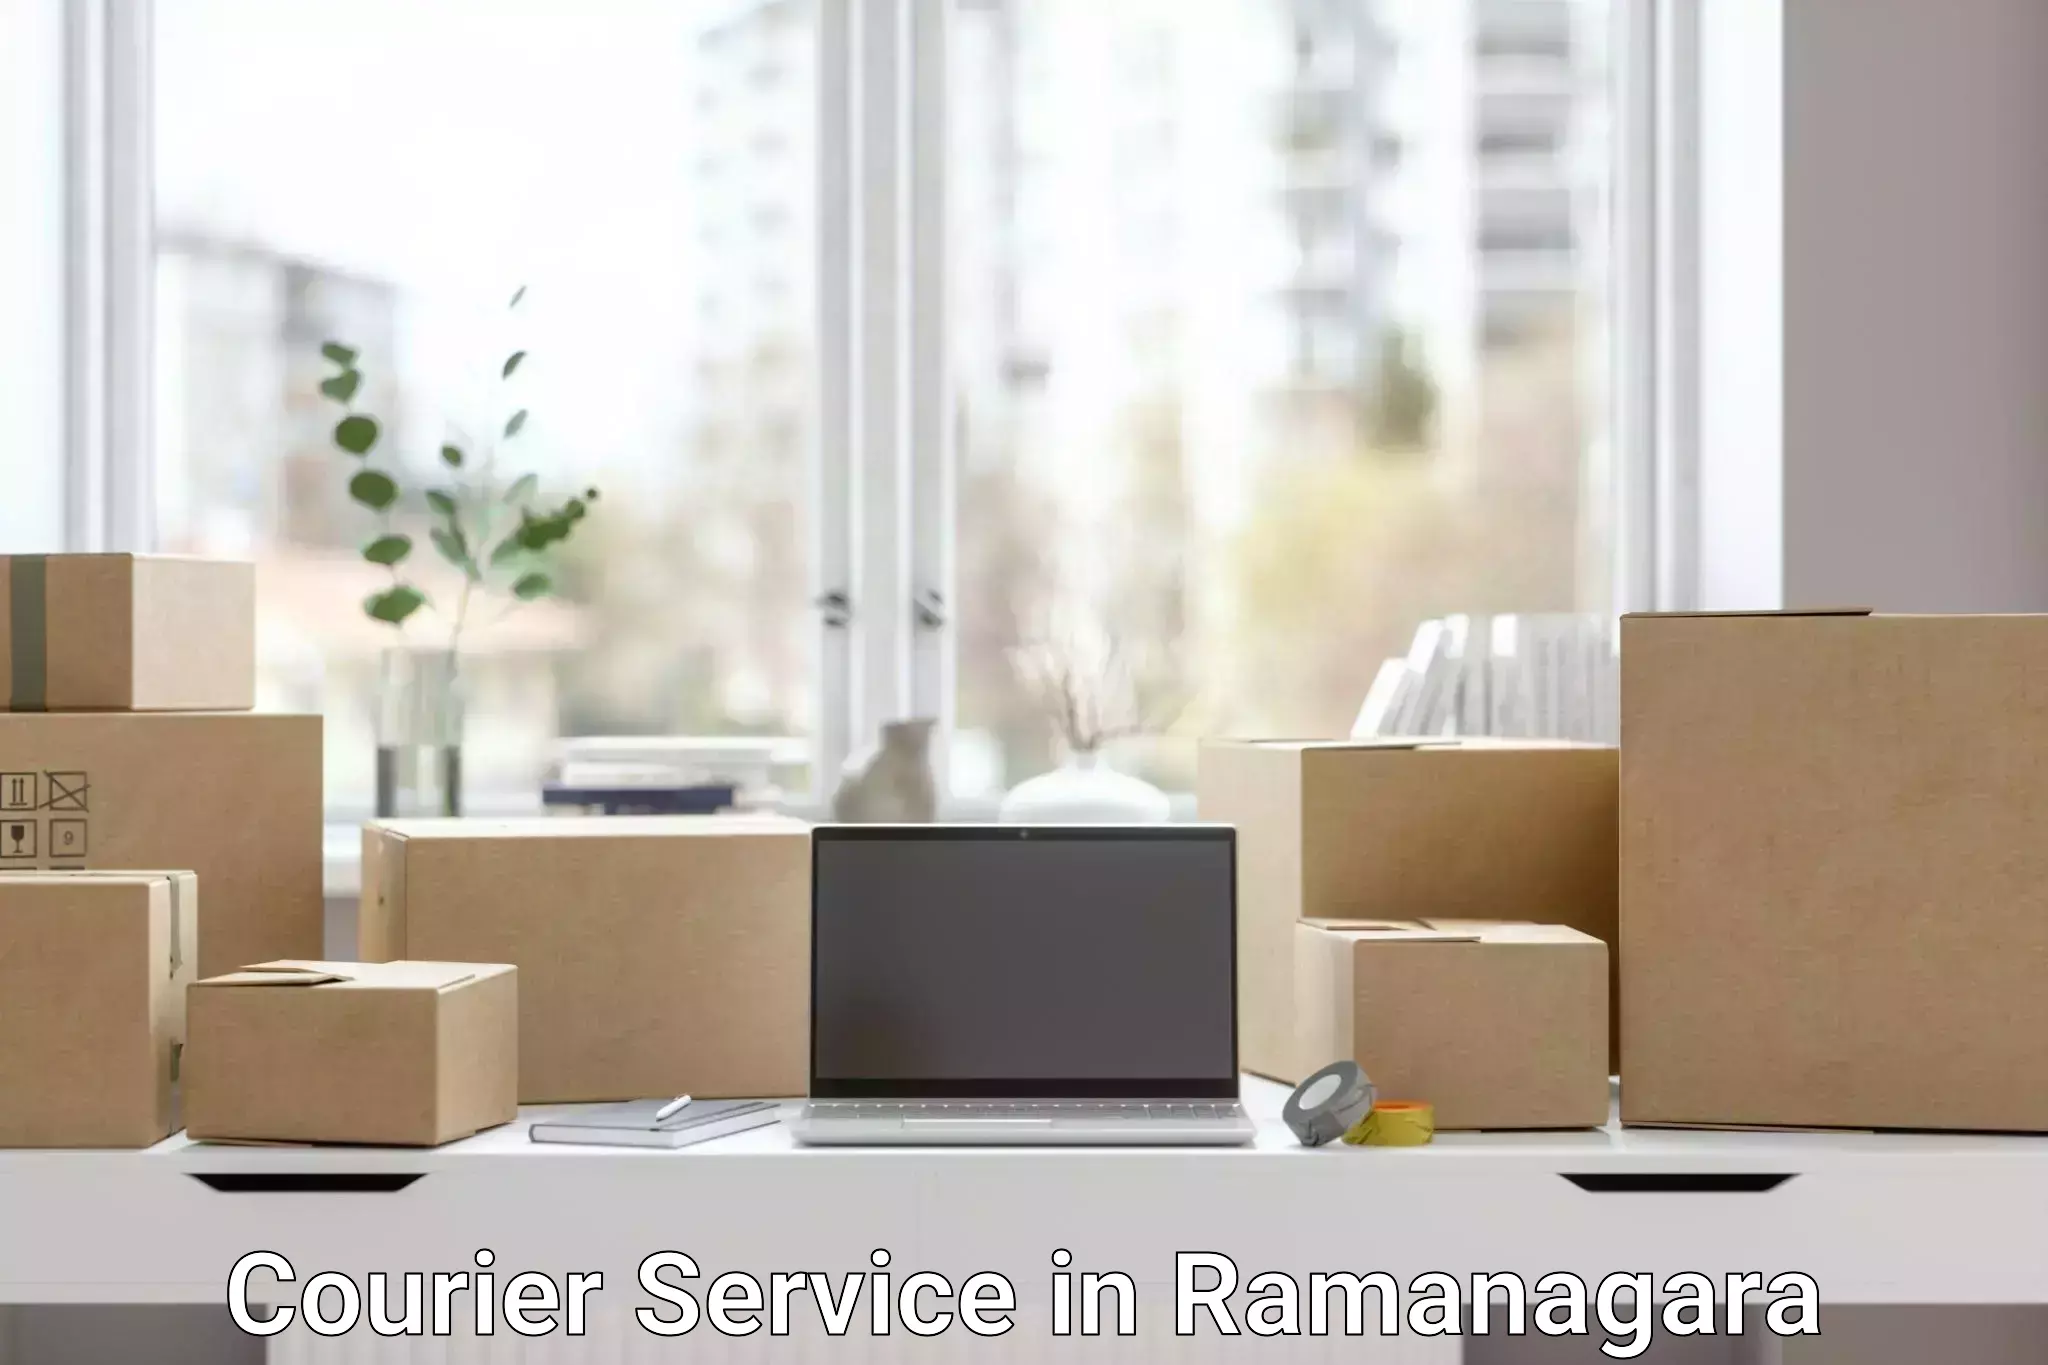 Next-generation courier services in Ramanagara